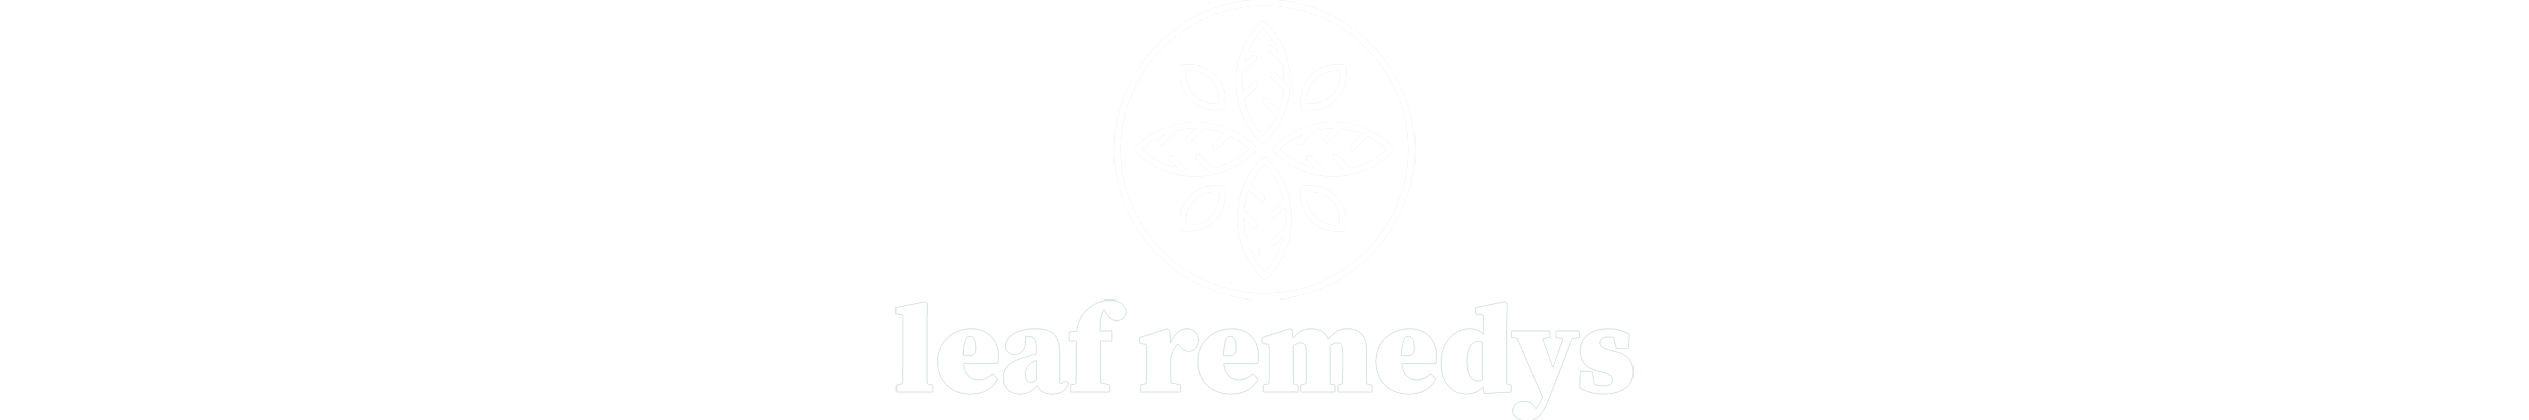 leaf-remedies-logo-420px-white